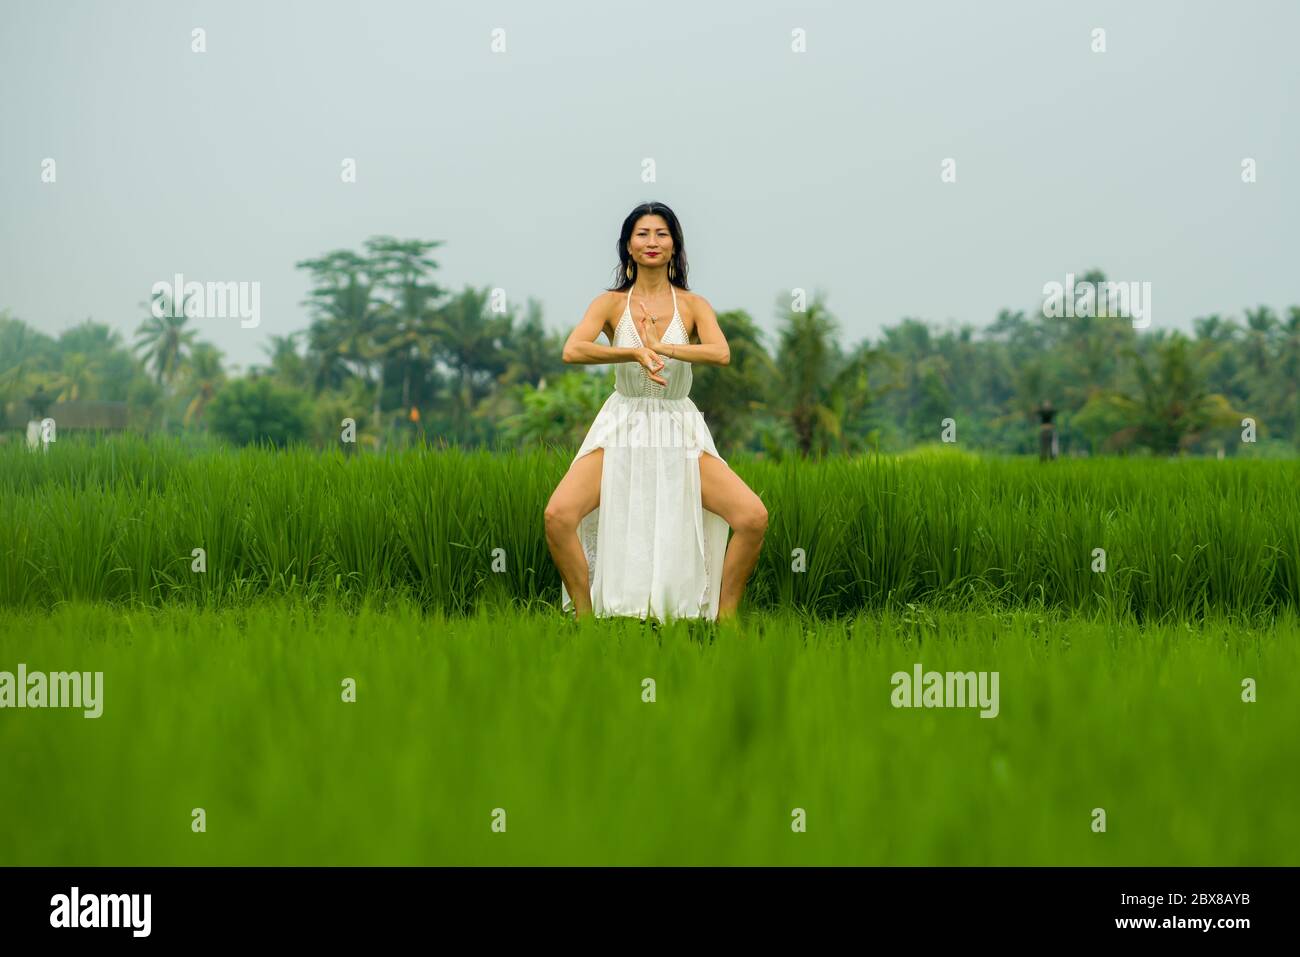 Corps et esprit connexion avec la nature - heureuse et belle femme coréenne asiatique faisant yoga et méditation exercice à l'extérieur dans le champ idyllique de riz vert Banque D'Images